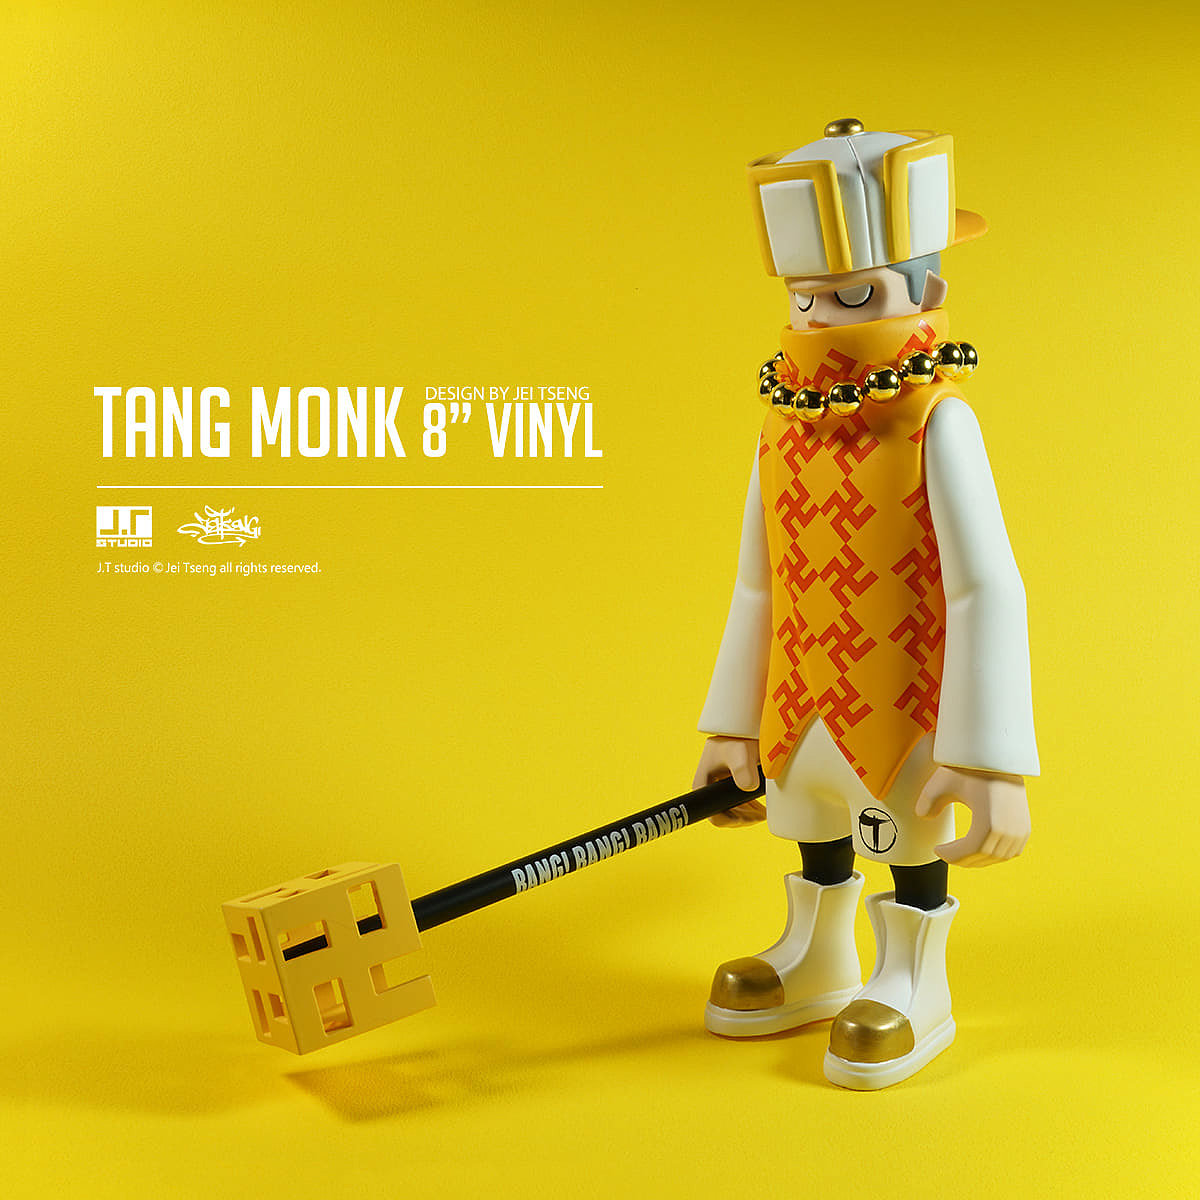 塑料，手办，Tang Monk 8" vinyl，